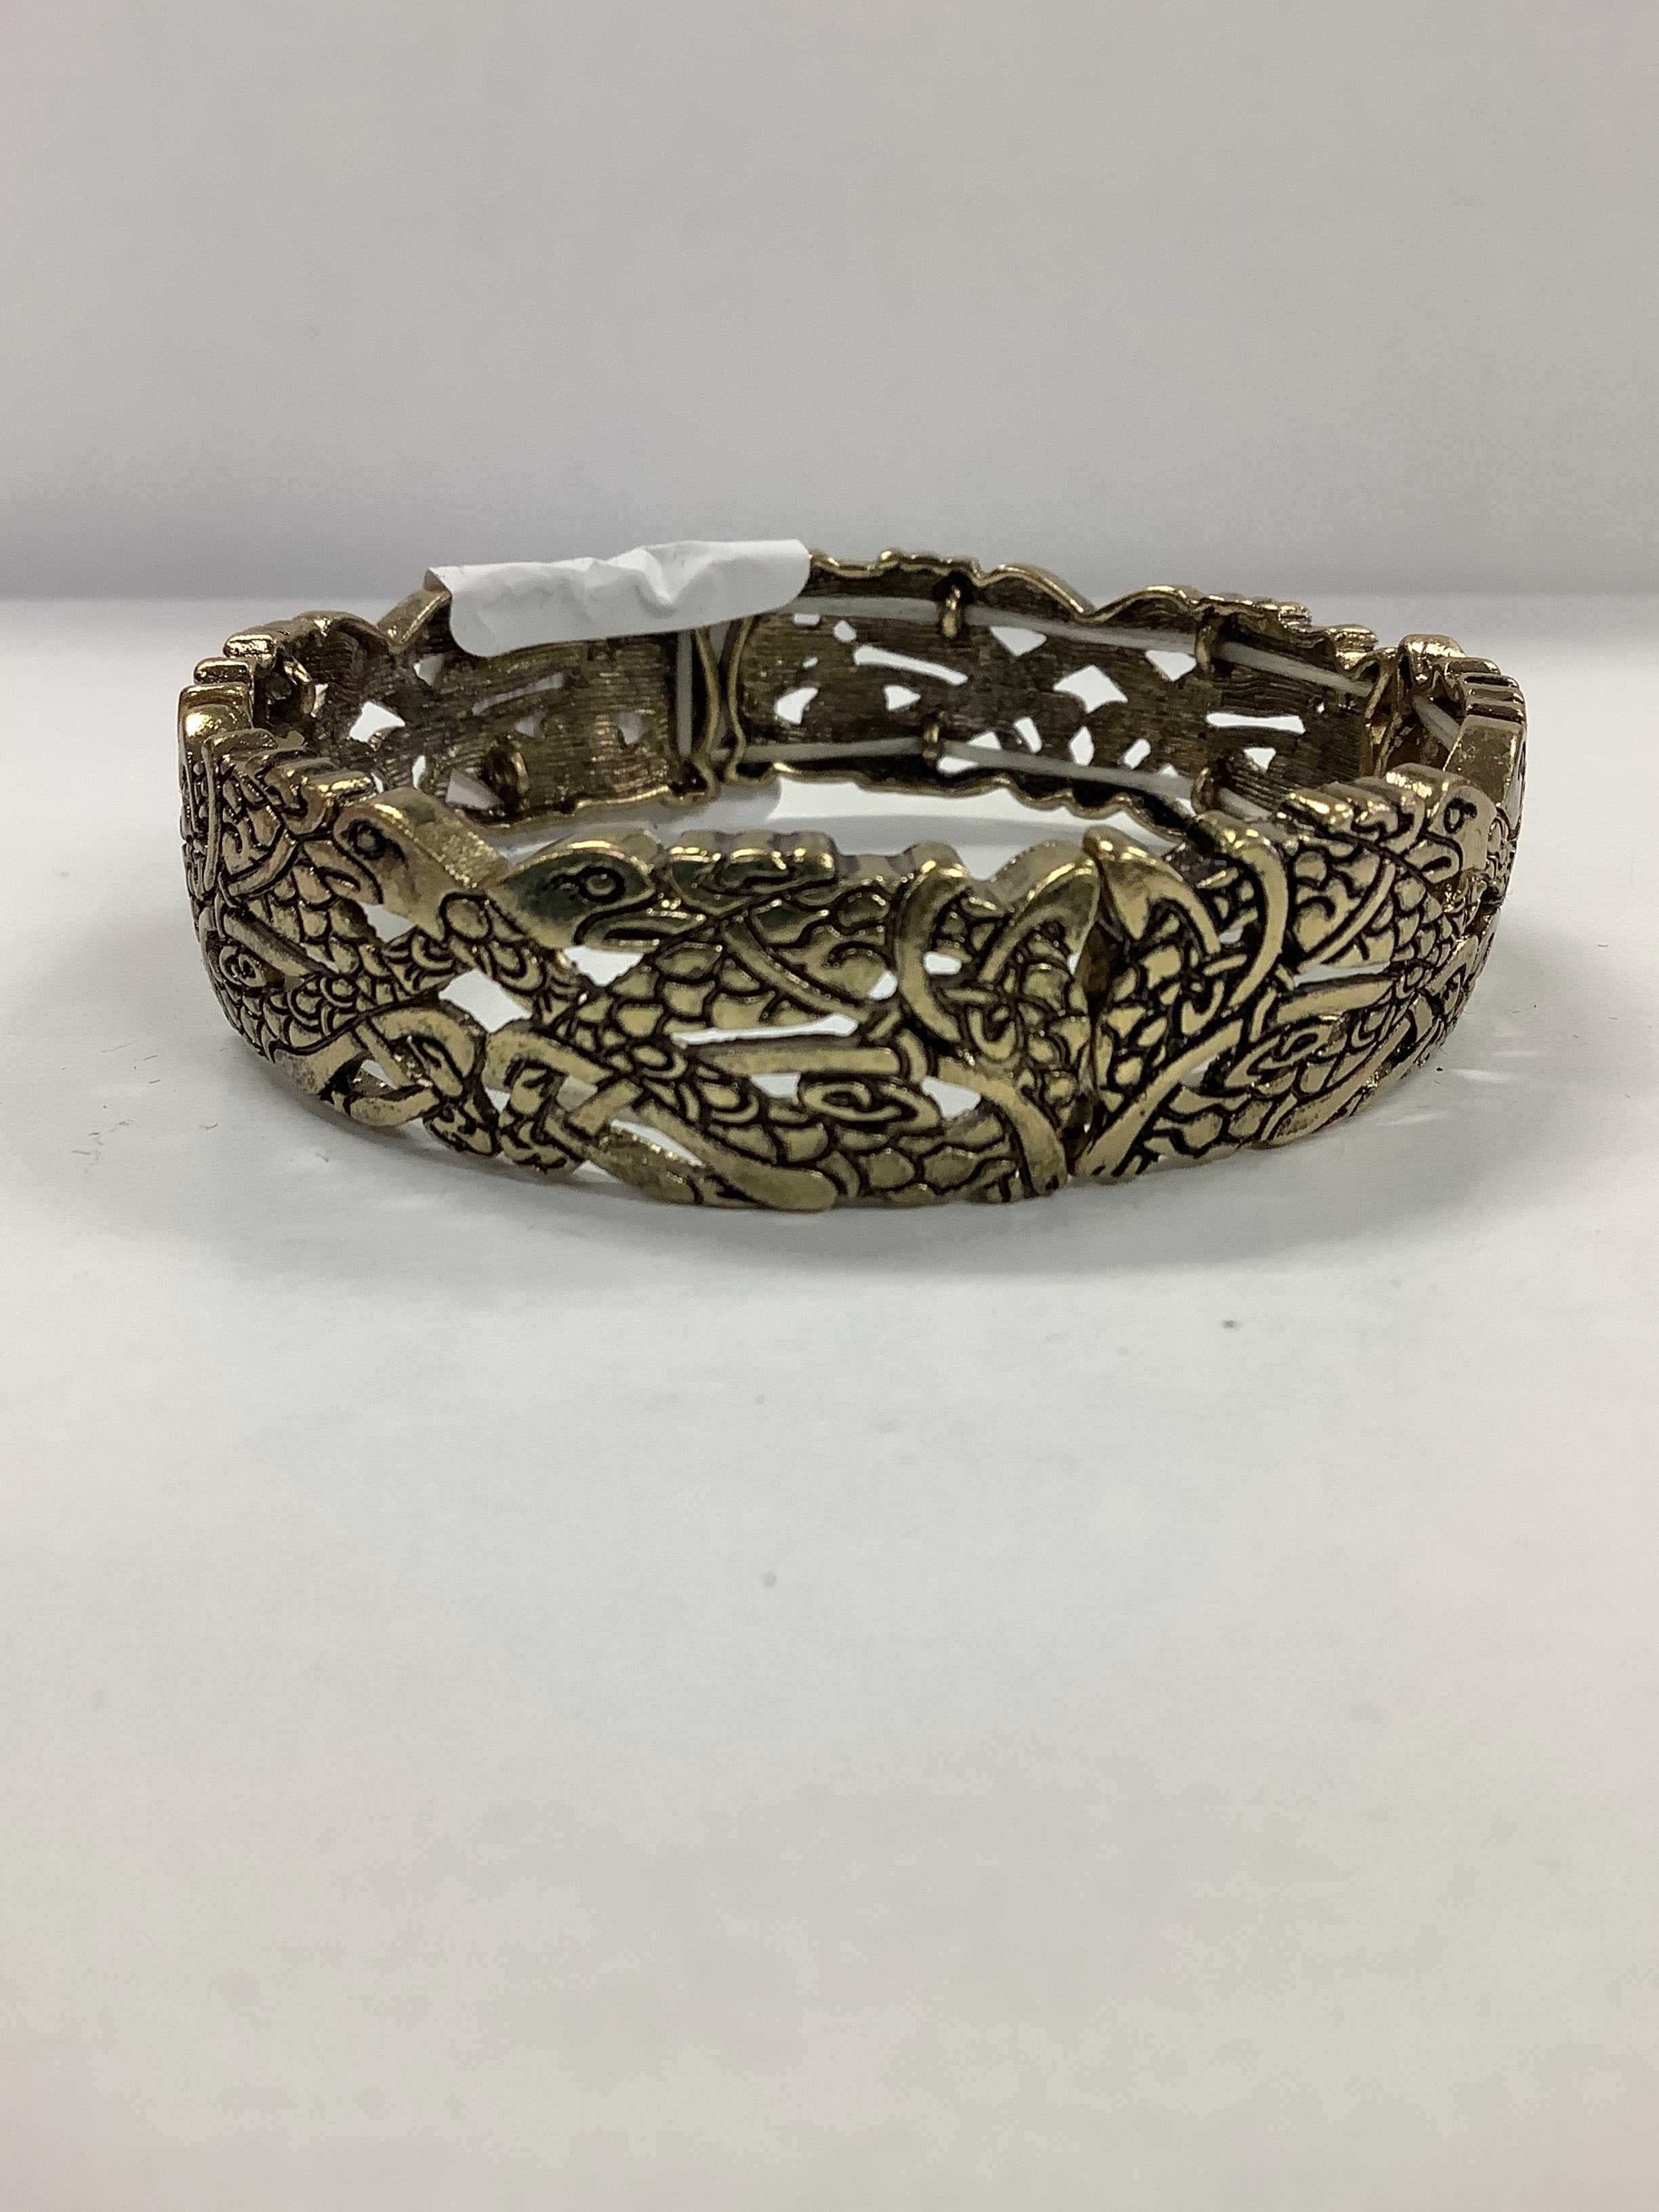 celtic stretch bracelet gold color